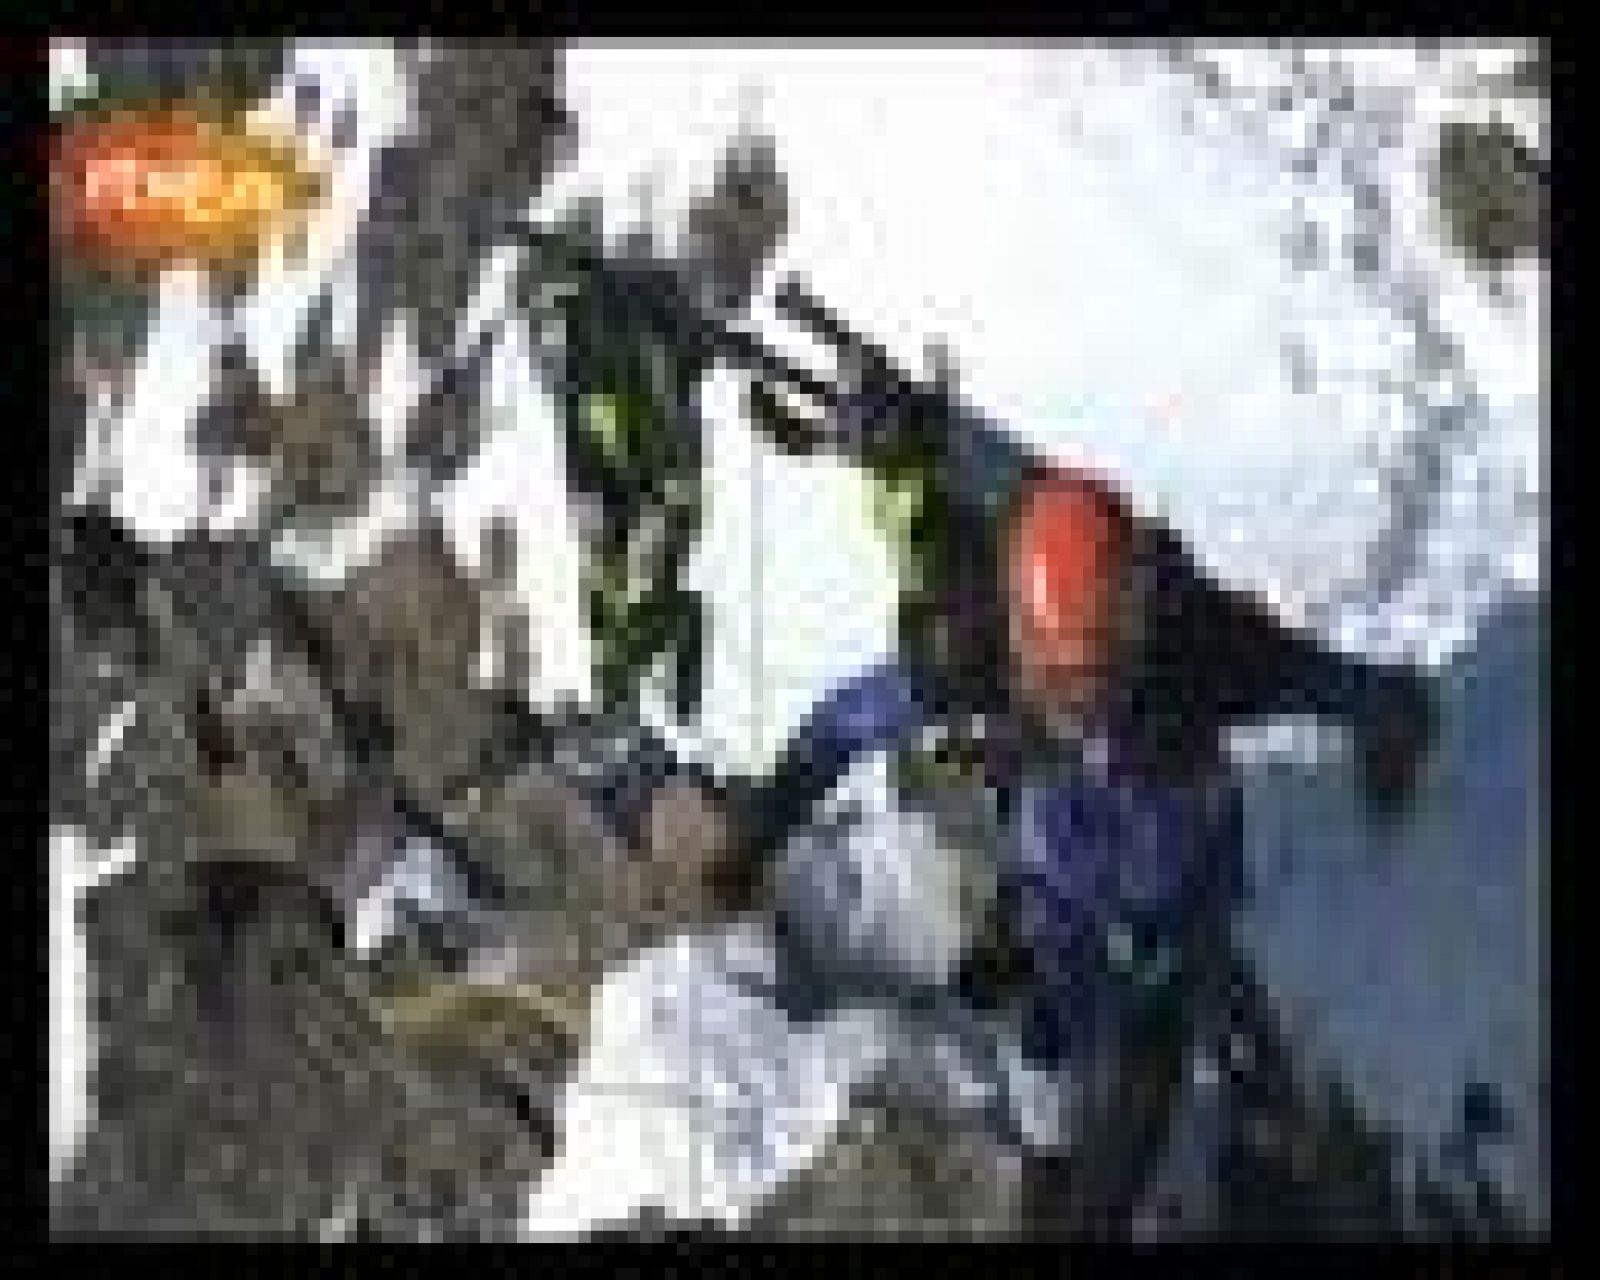   La pareja formada por el español Kilian Jornet y el suizo Florent Troillet ha ganado la última edición de la Pierra Menta, la carrera más prestigiosa de esquí de montaña. Cuatro días de subidas y bajadas no por pistas de esquí, sino por valles, laderas, cumbres y bosques de los Alpes, todo ello fuera de pista y con más de 10.000 metros de desnivel positivo acumulado. 